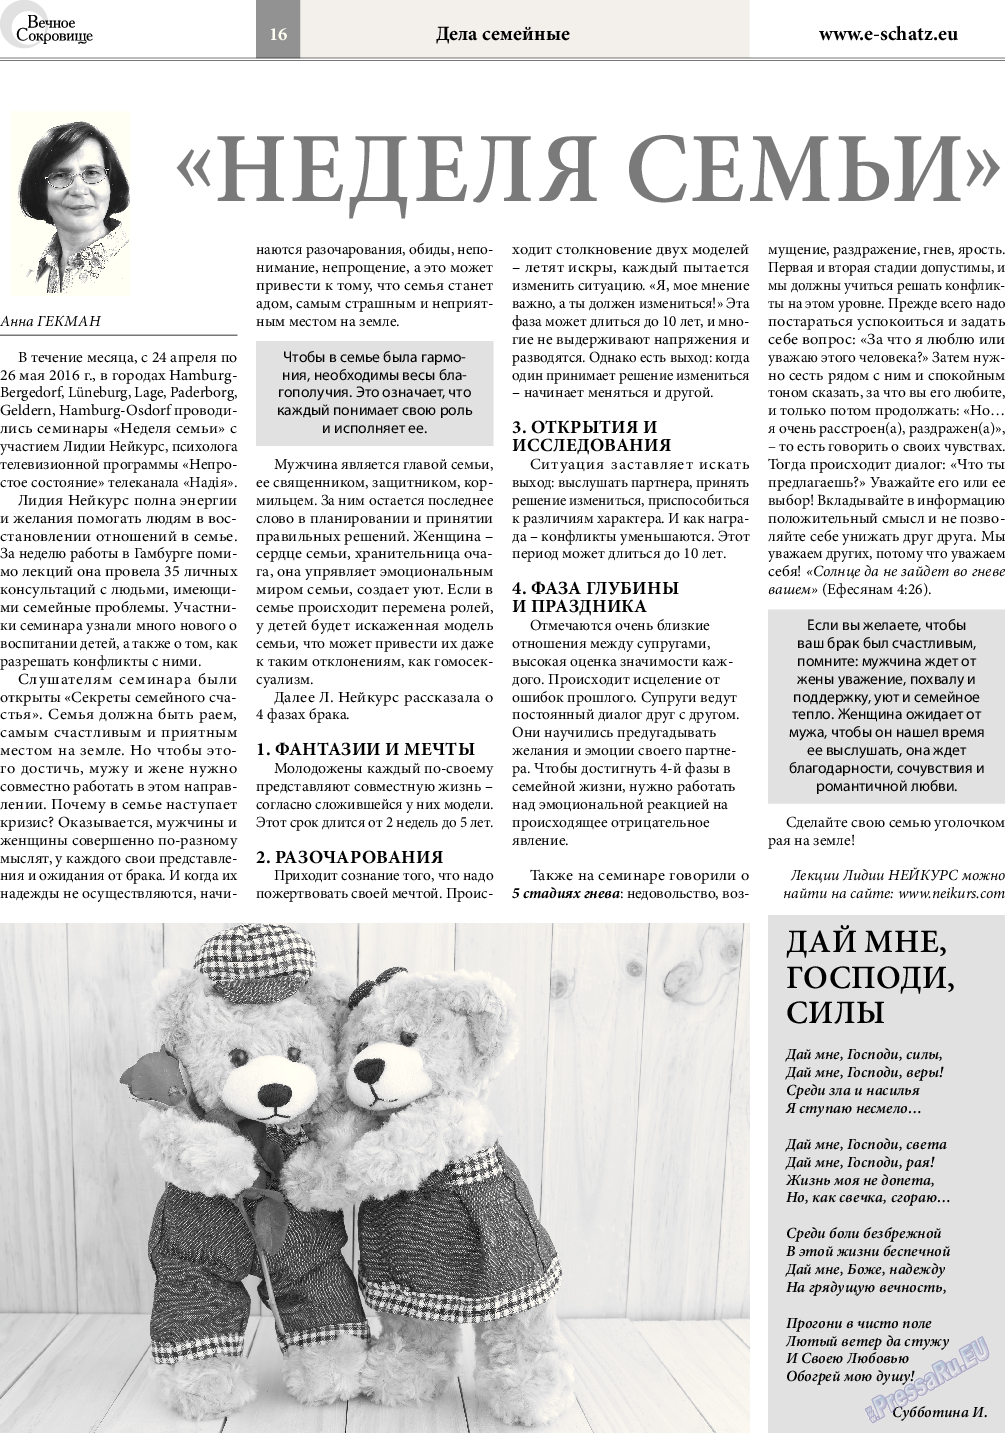 Вечное сокровище (газета). 2016 год, номер 3, стр. 16